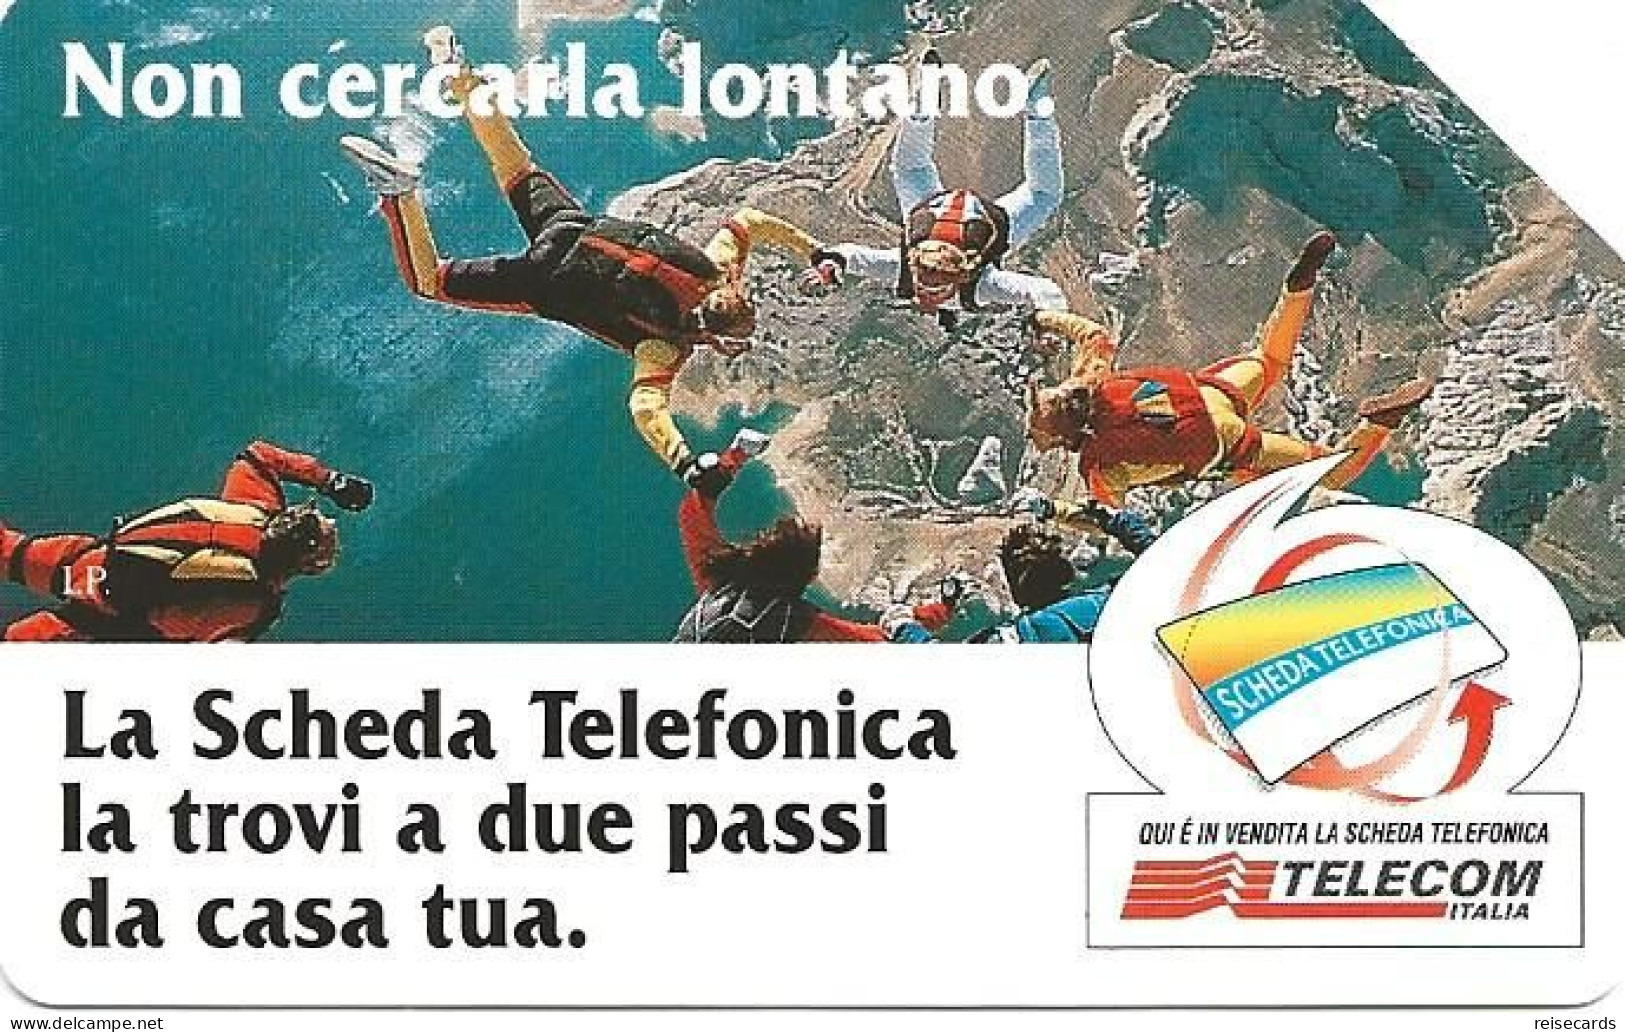 Italy: Telecom Italia - La Scheda Telefonica, Non Cercarla Lontano - Öff. Werbe-TK